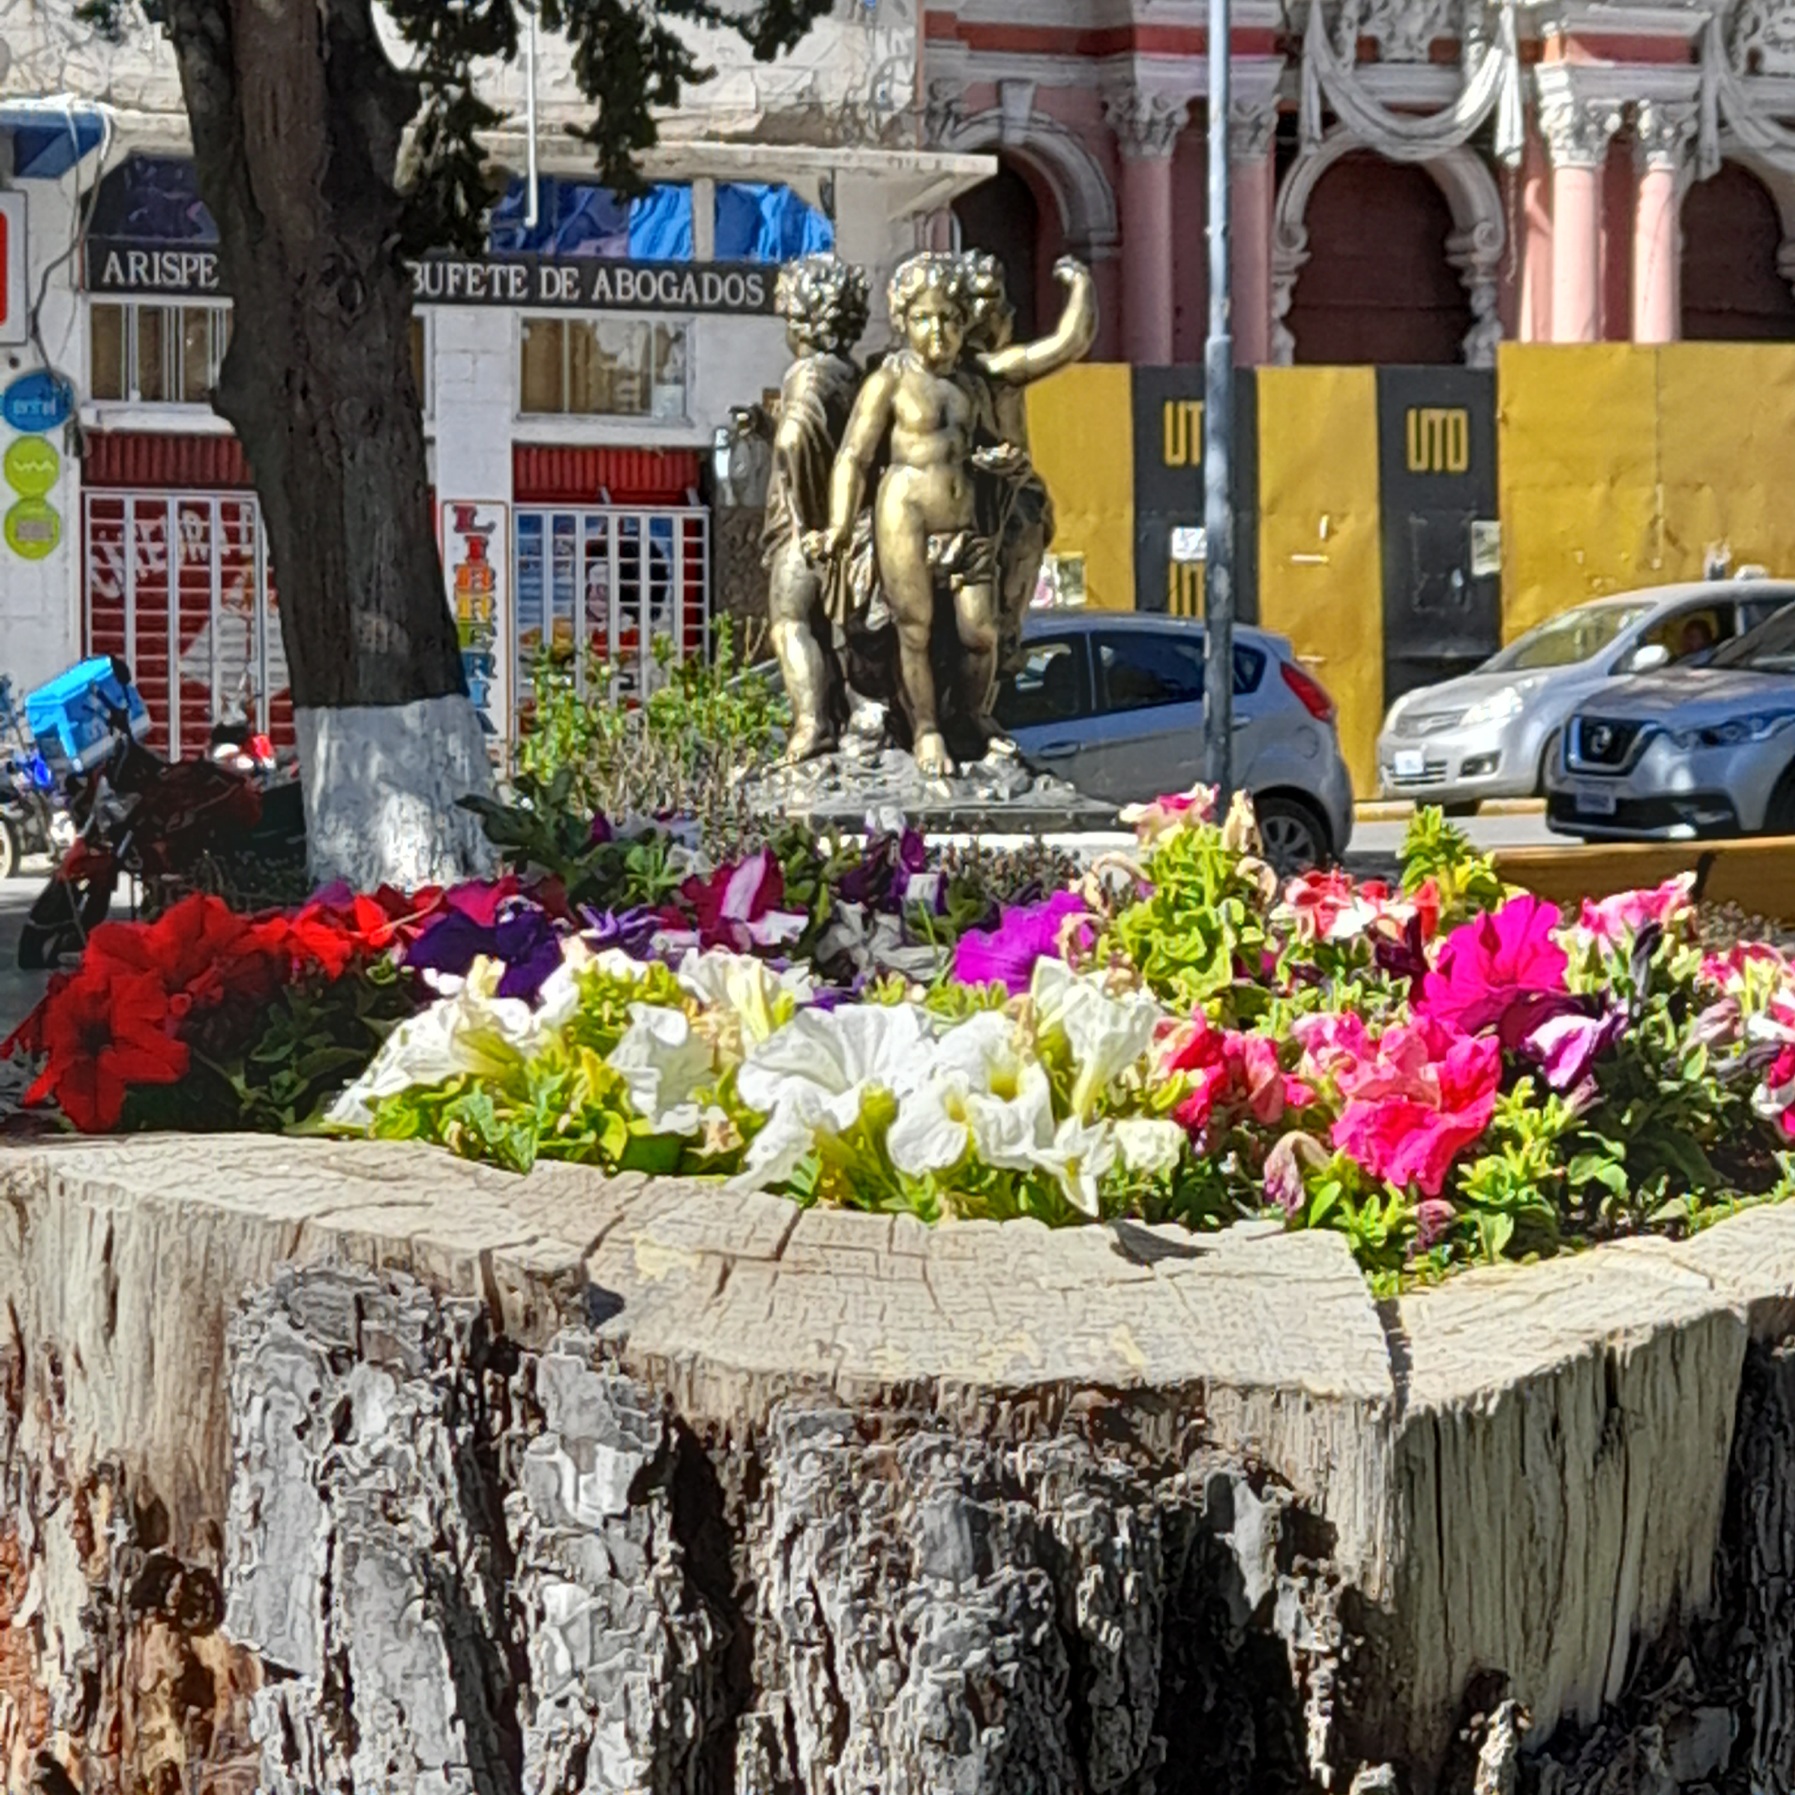 Foto: Flores sobre tronco. - Ciudad de Oruro (Oruro), Bolivia